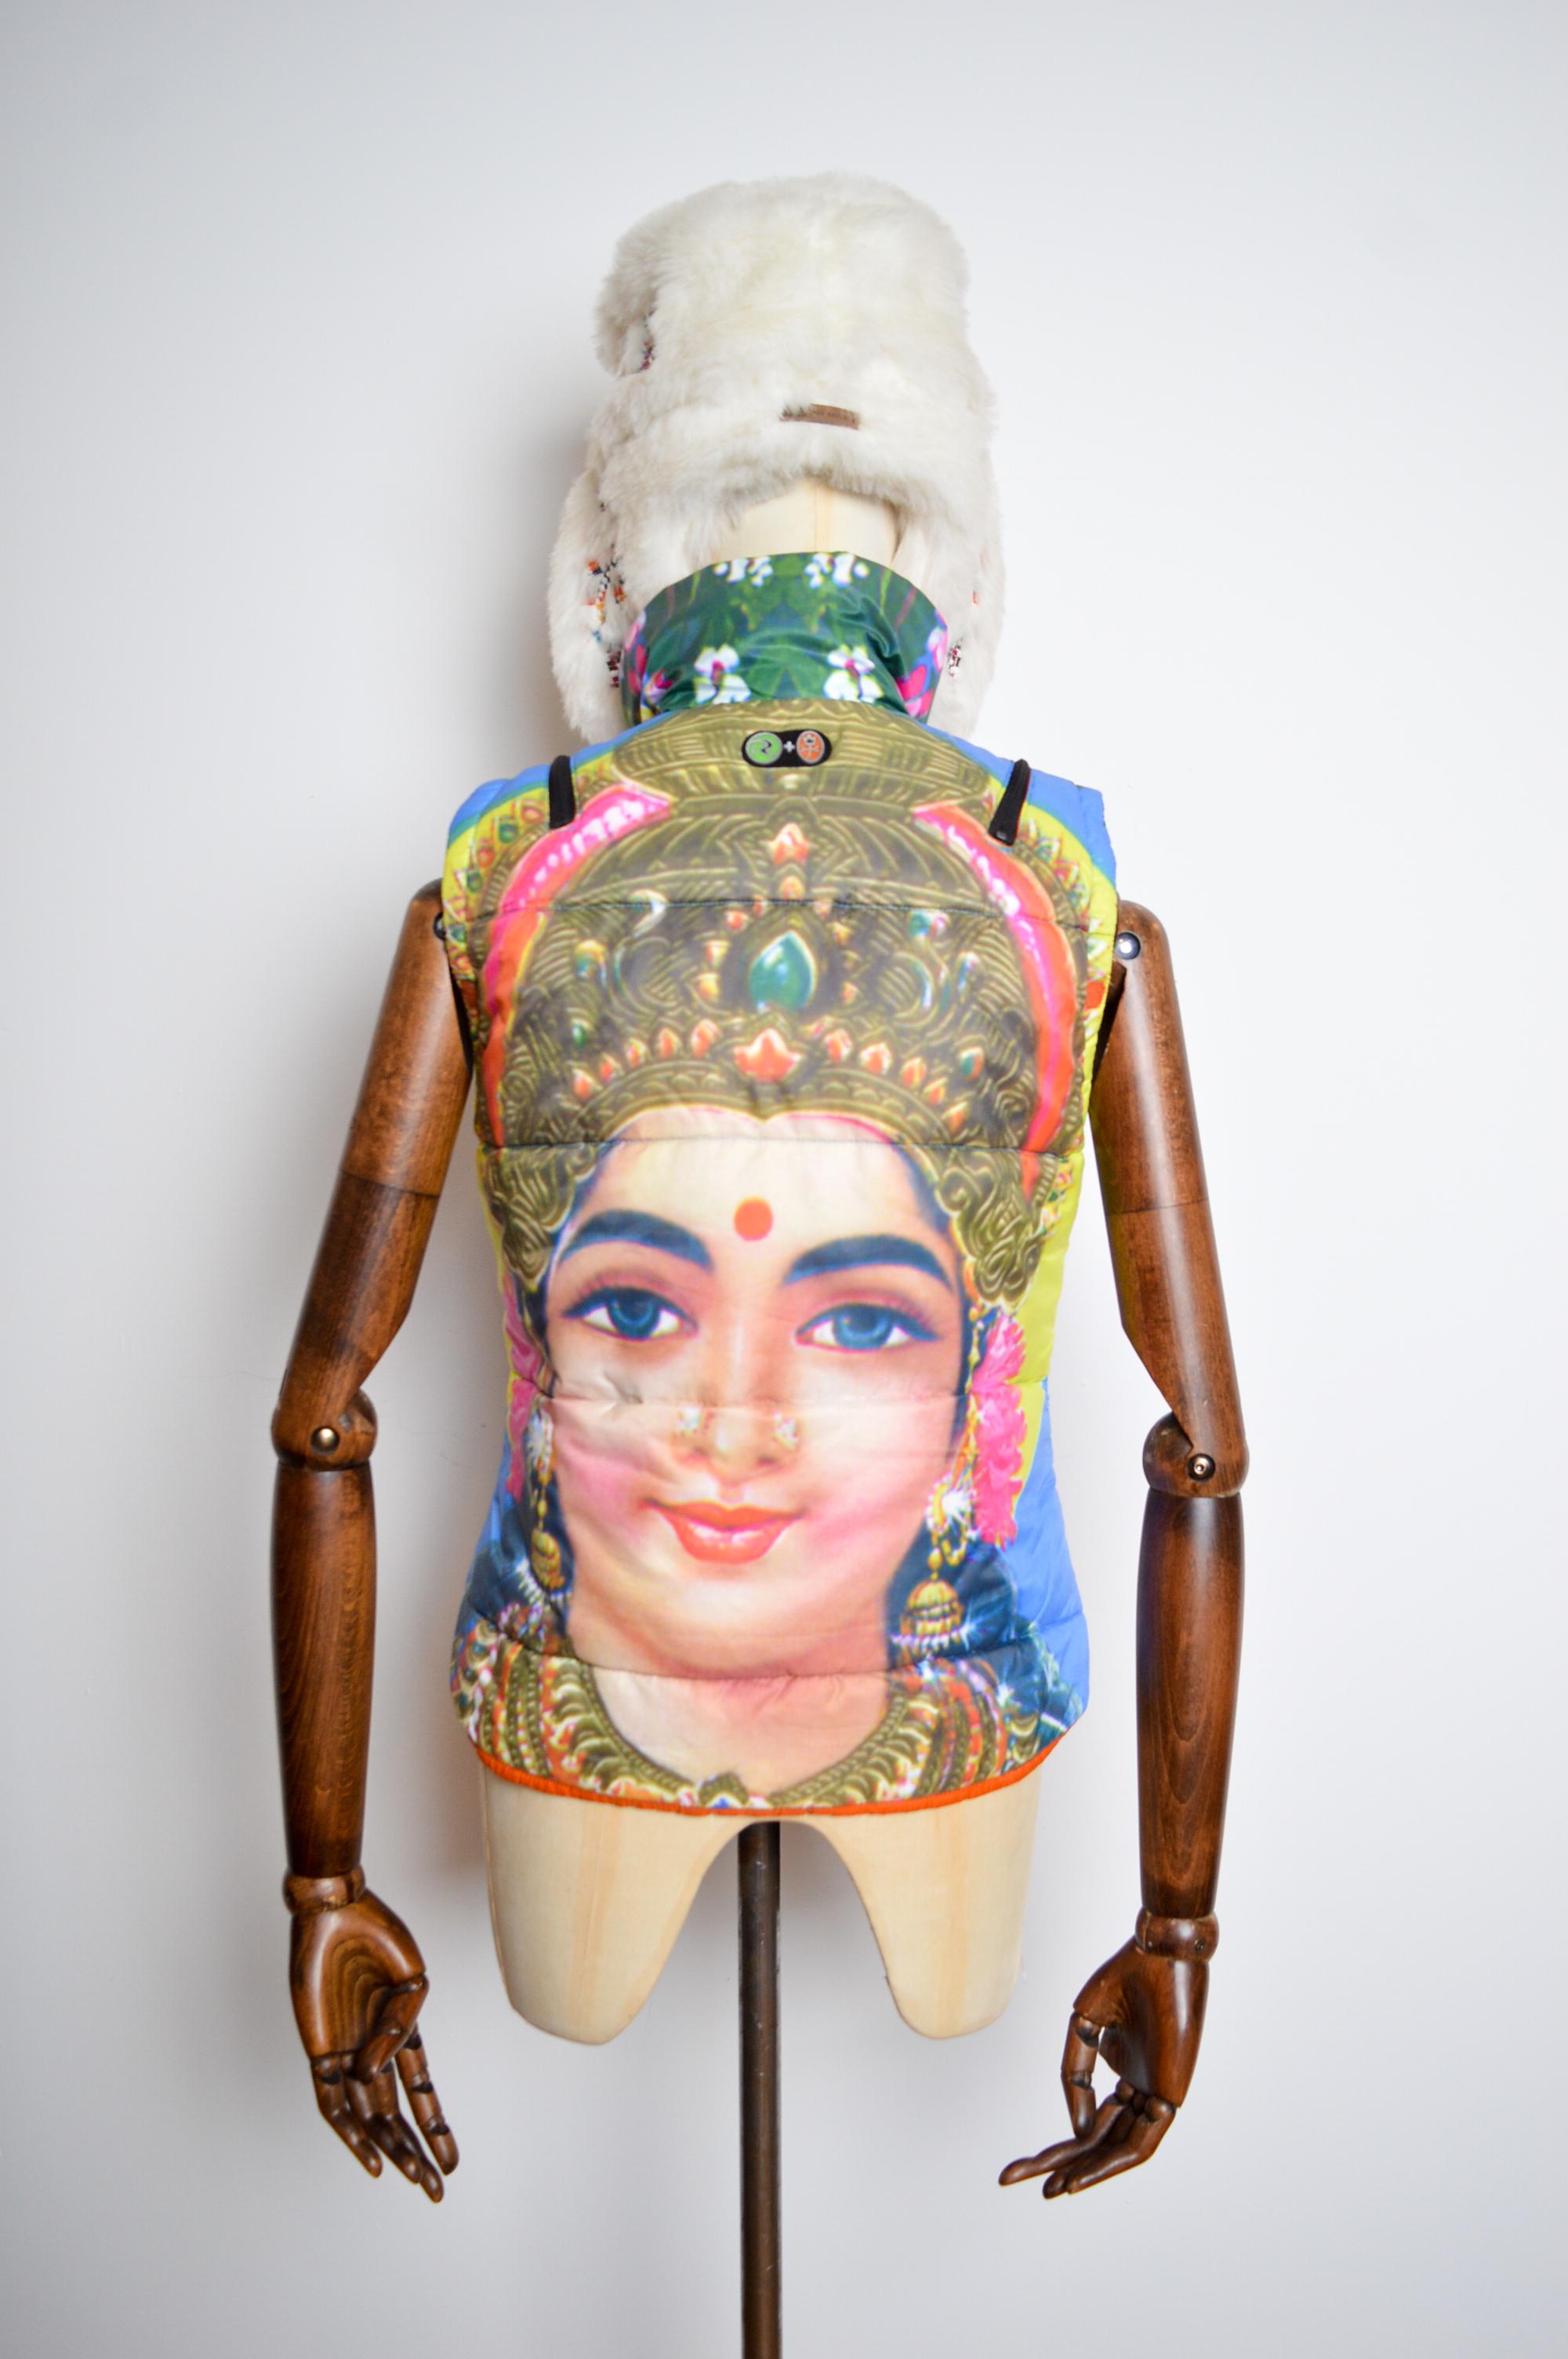 Superbe veste de ski Jean Charles de Castelbajac X ROSSIGNOL dans des tons et couleurs vibrants représentant une déesse indienne. 

Circa 2005.  

Une pièce rare et avant-gardiste issue de la Collaboration entre l'Artiste, Poète et Designer français